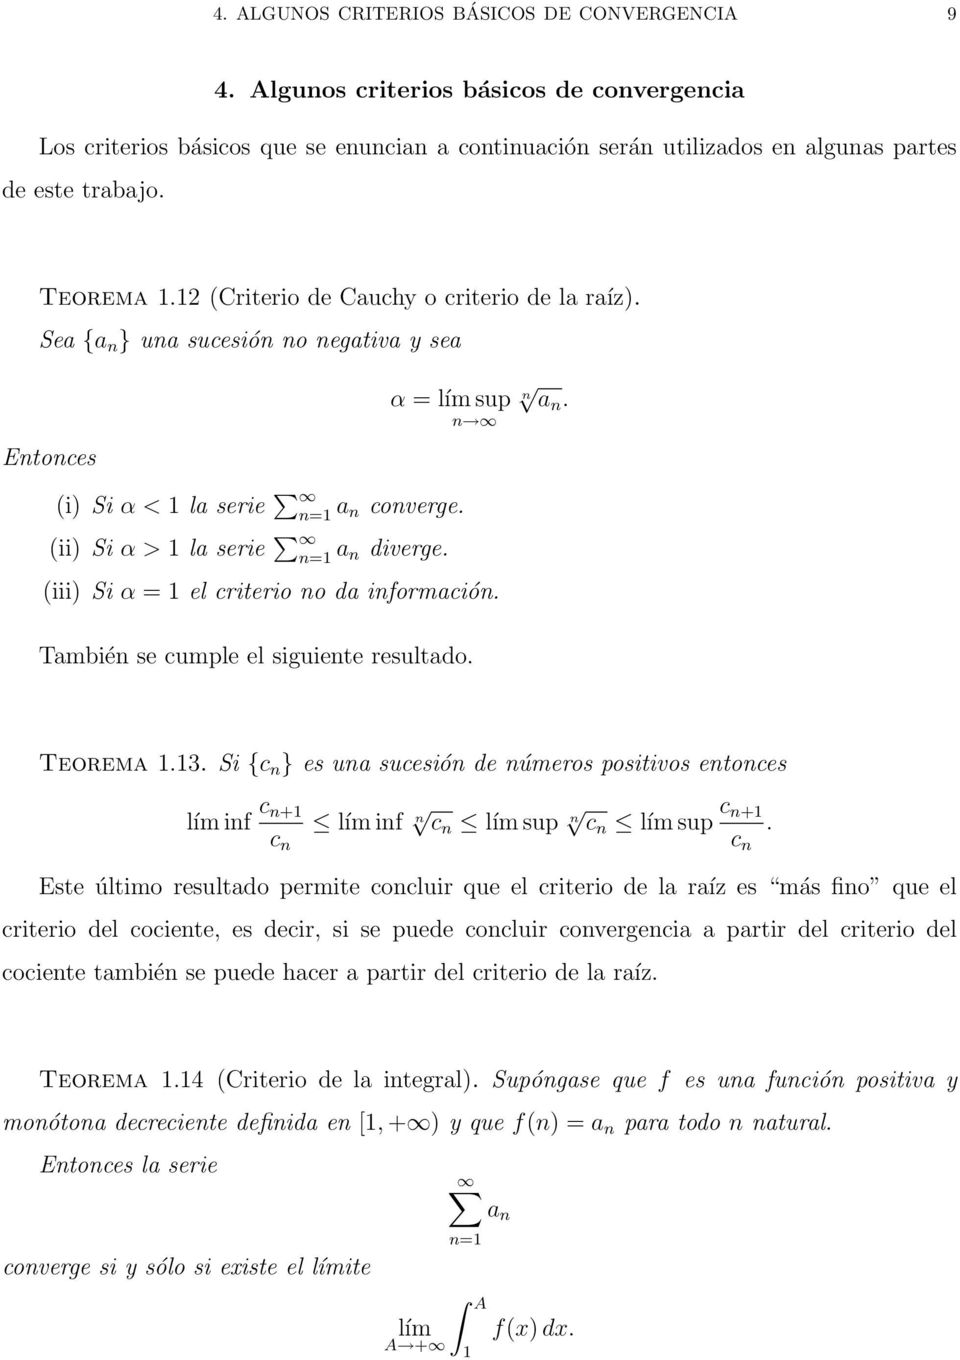 (iii) Si α el criterio no da información. n an. También se cumple el siguiente resultado. Teorema.3.